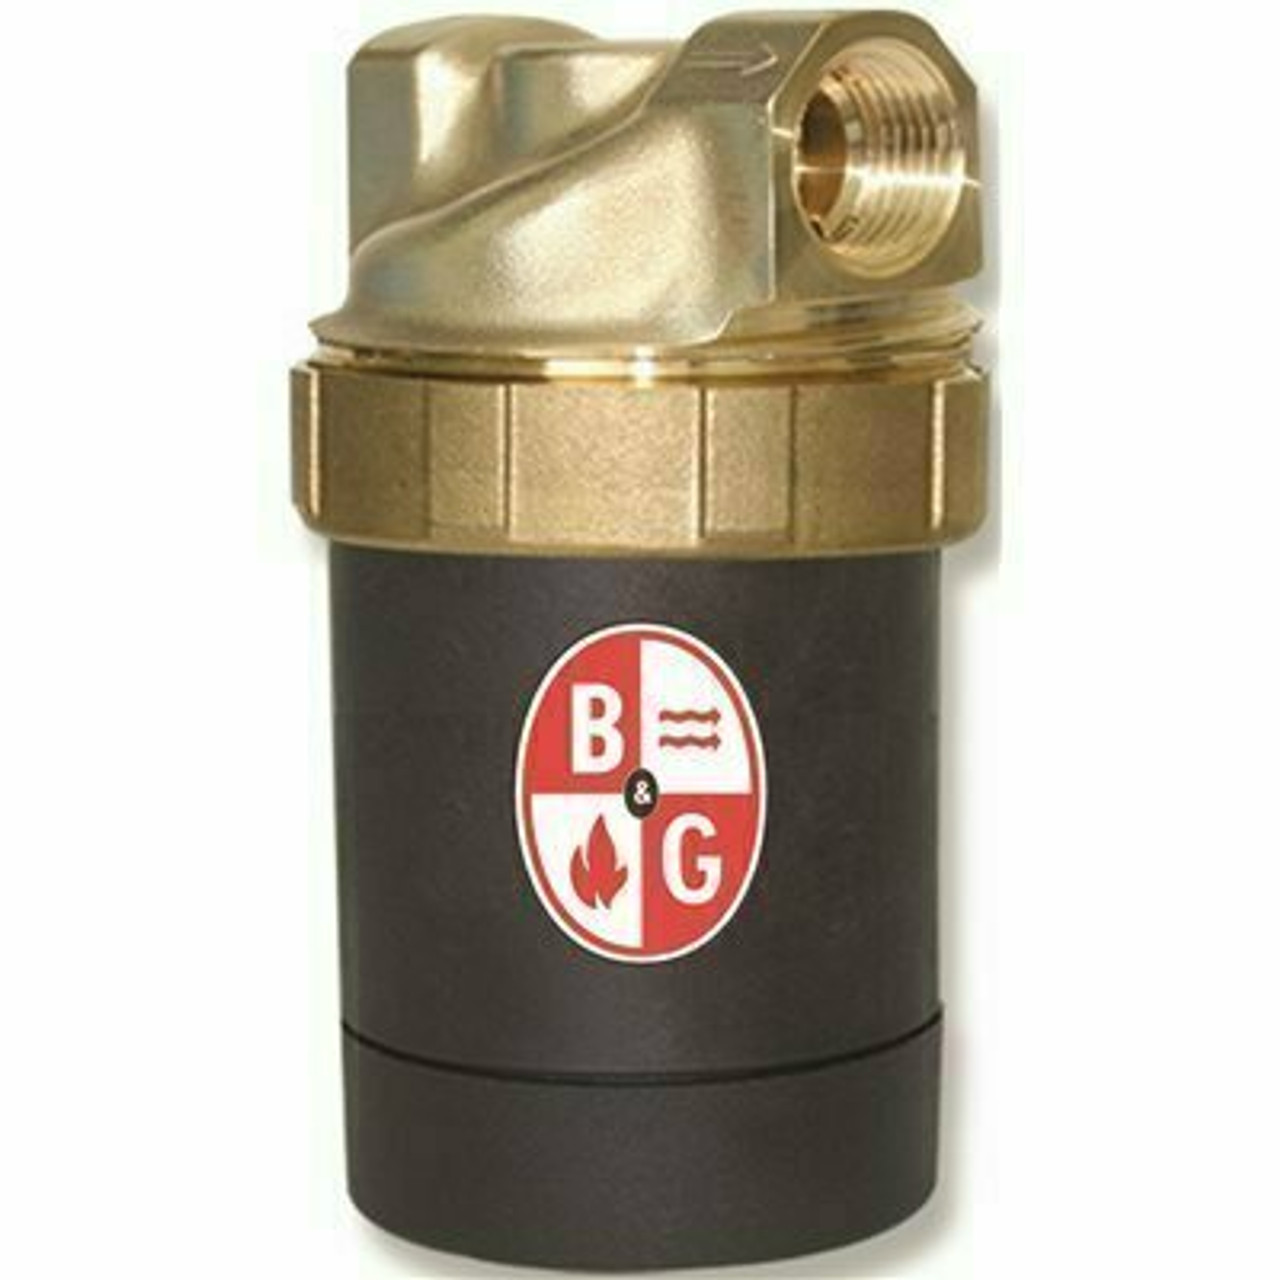 Bell & Gossett Circulator Pump Lead-Free Brass - 109238